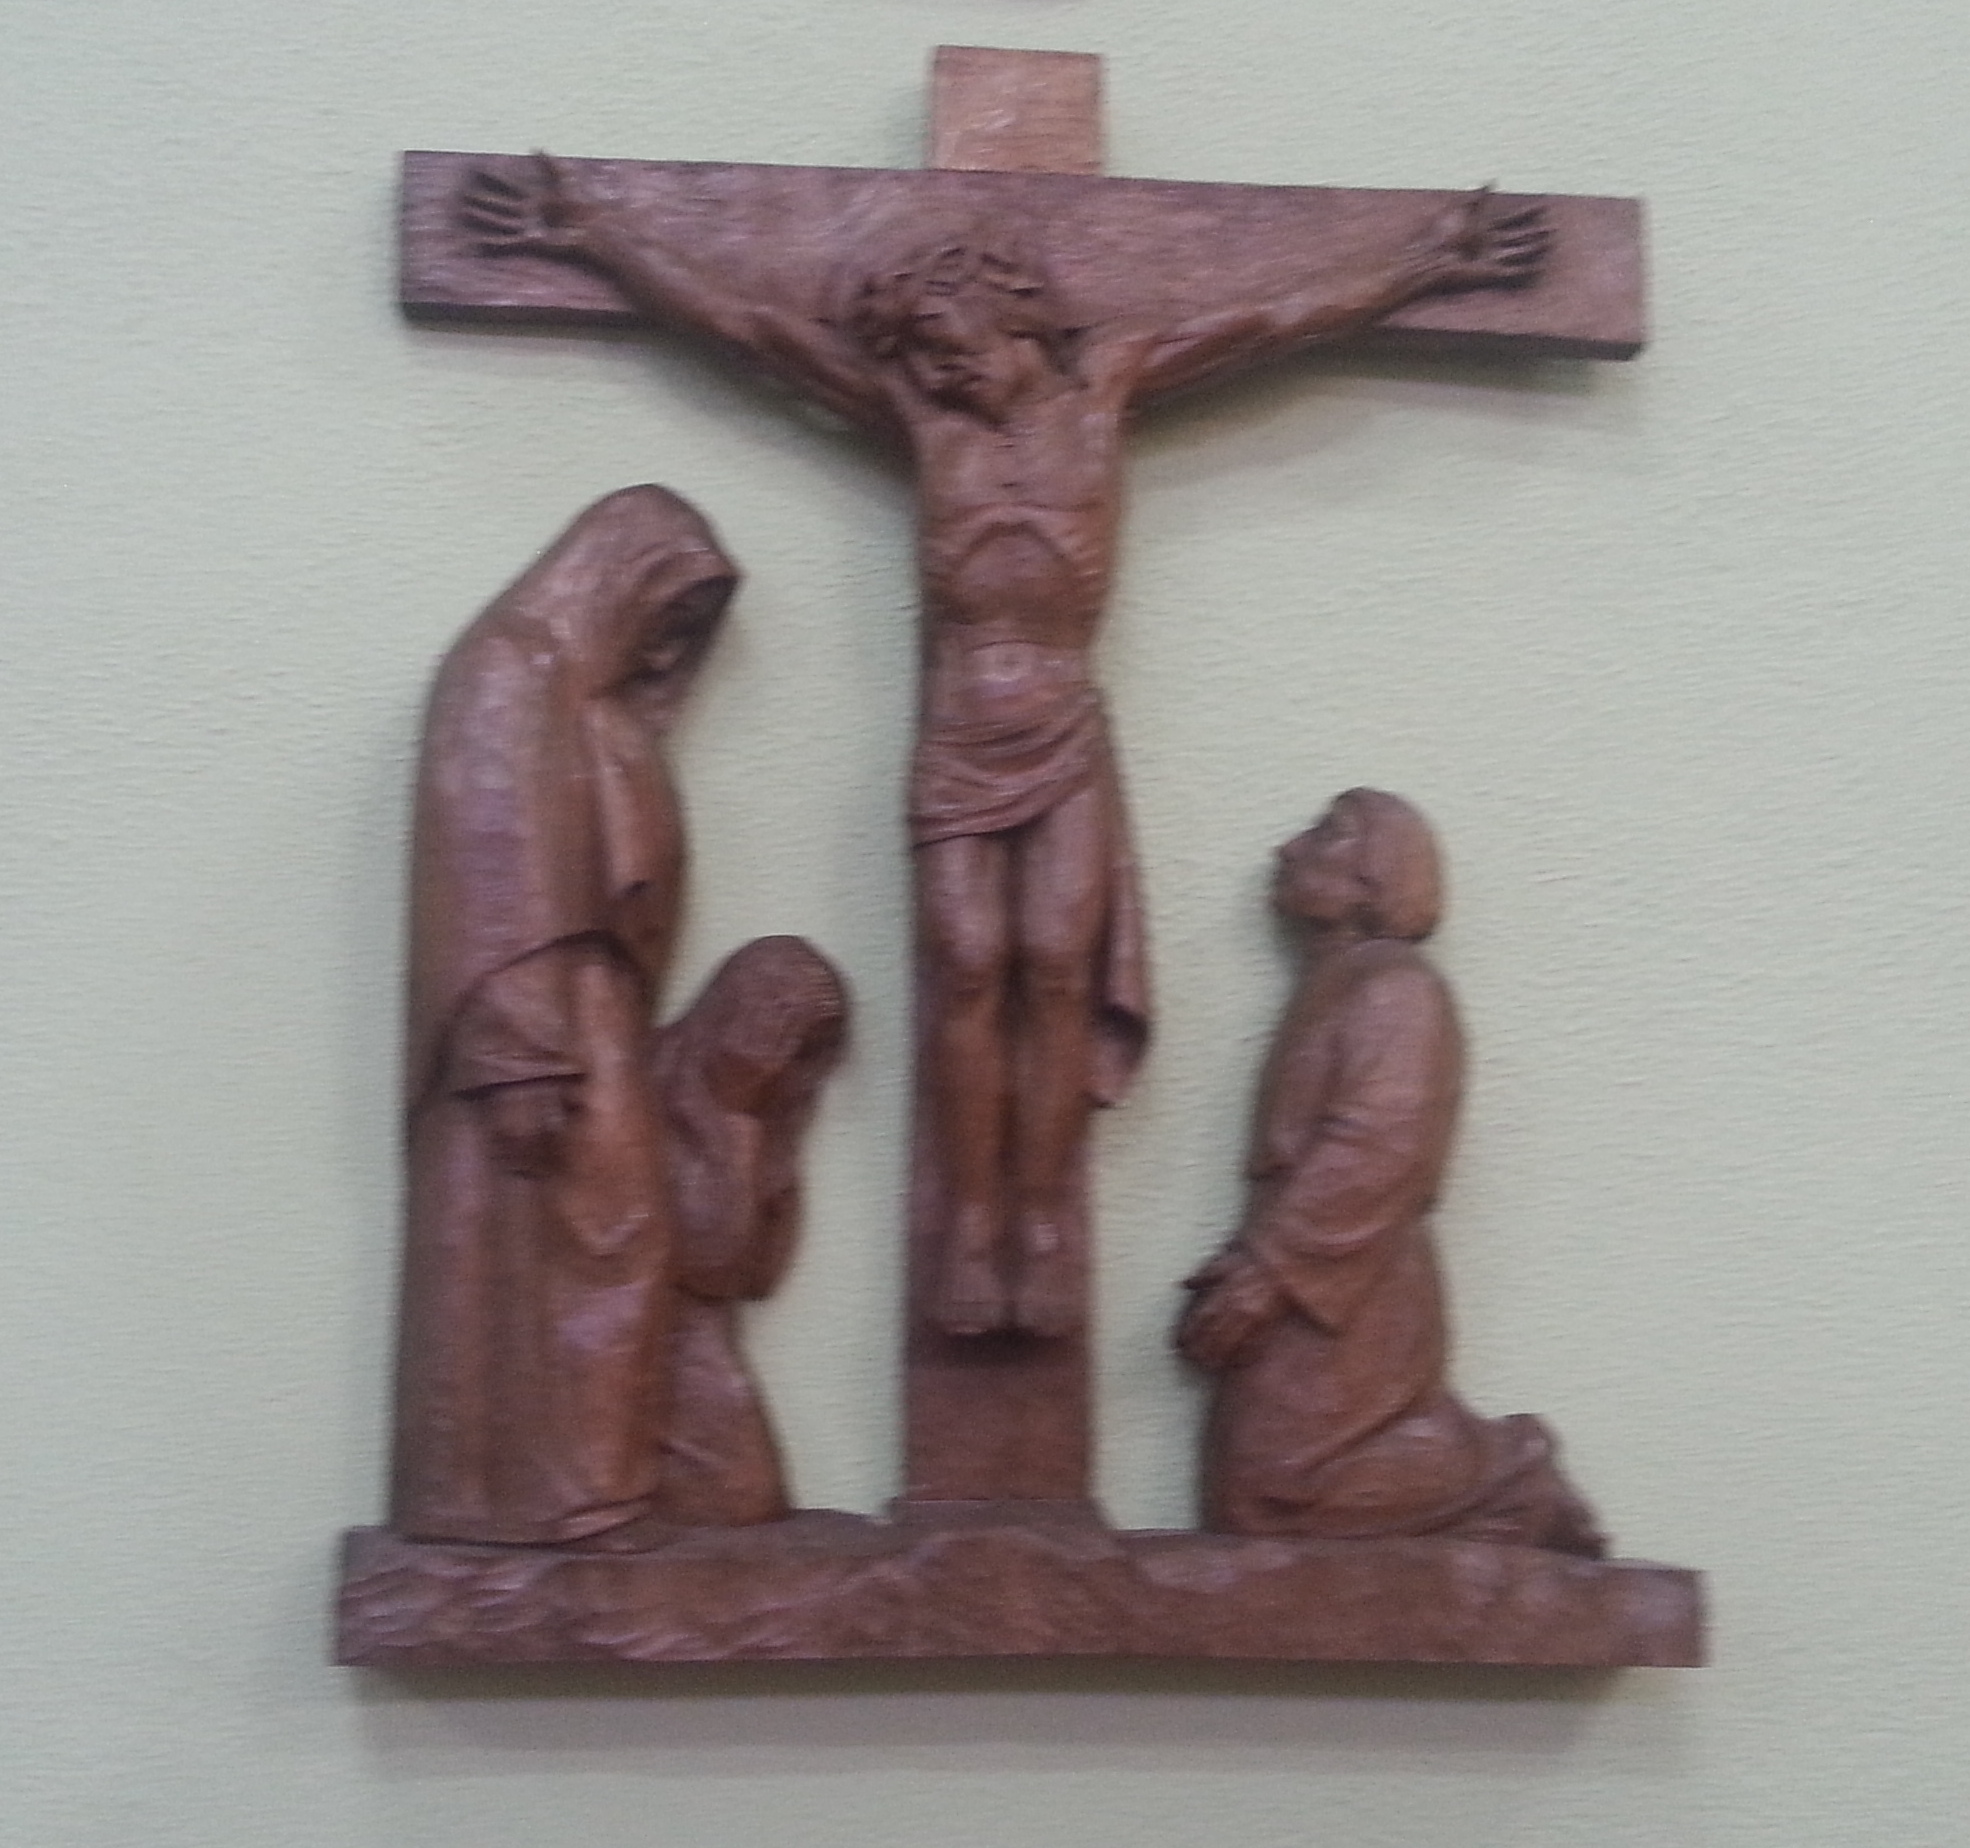 Twelfth Station: Jesus dies on the Cross